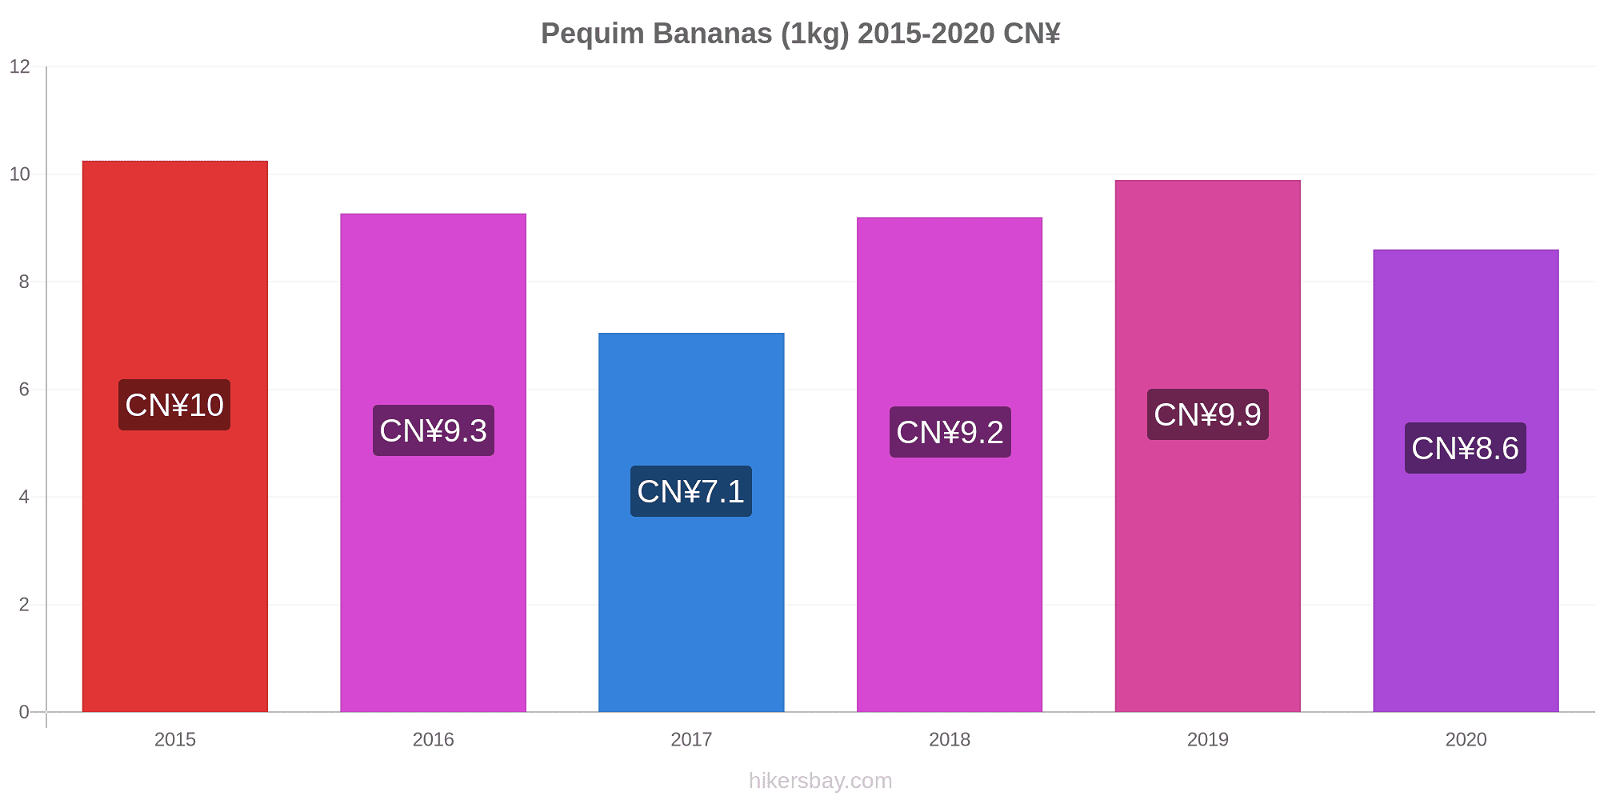 Pequim variação de preço Banana (1kg) hikersbay.com